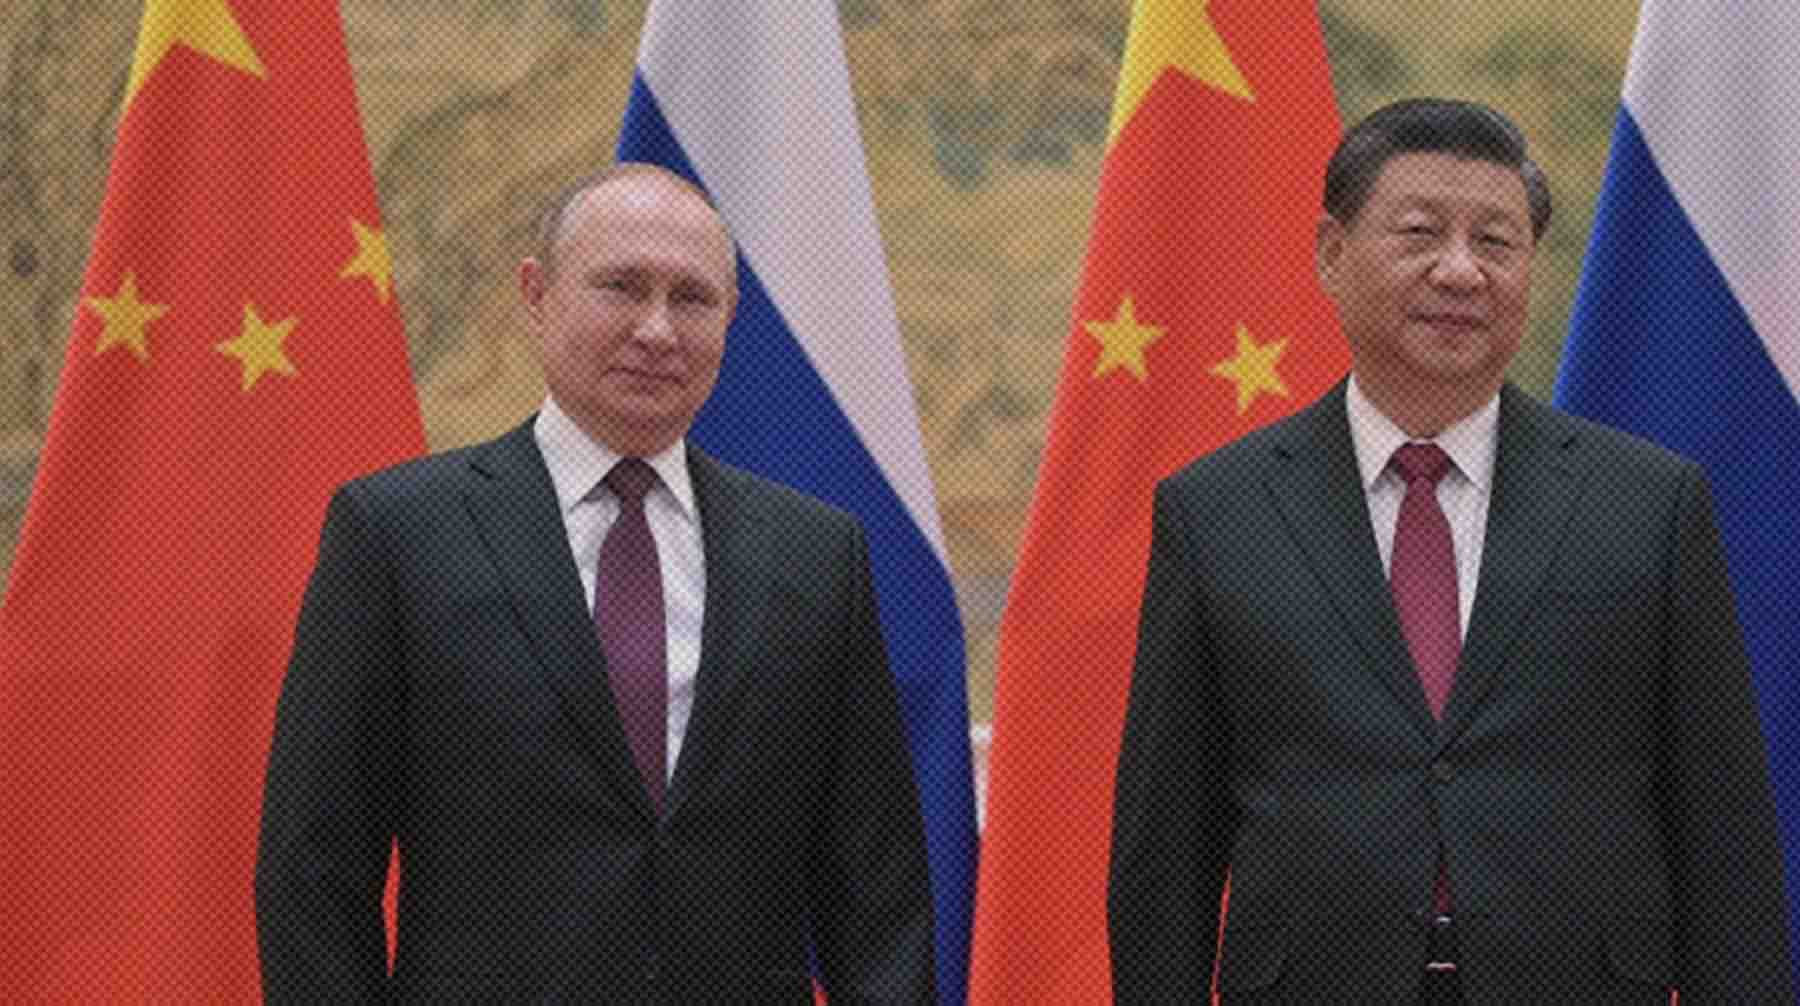 Dailystorm - Путин заявил, что Россия «немножко» завидует КНР, а Си Цзиньпин выразил уверенность в победе коллеги на президентских выборах